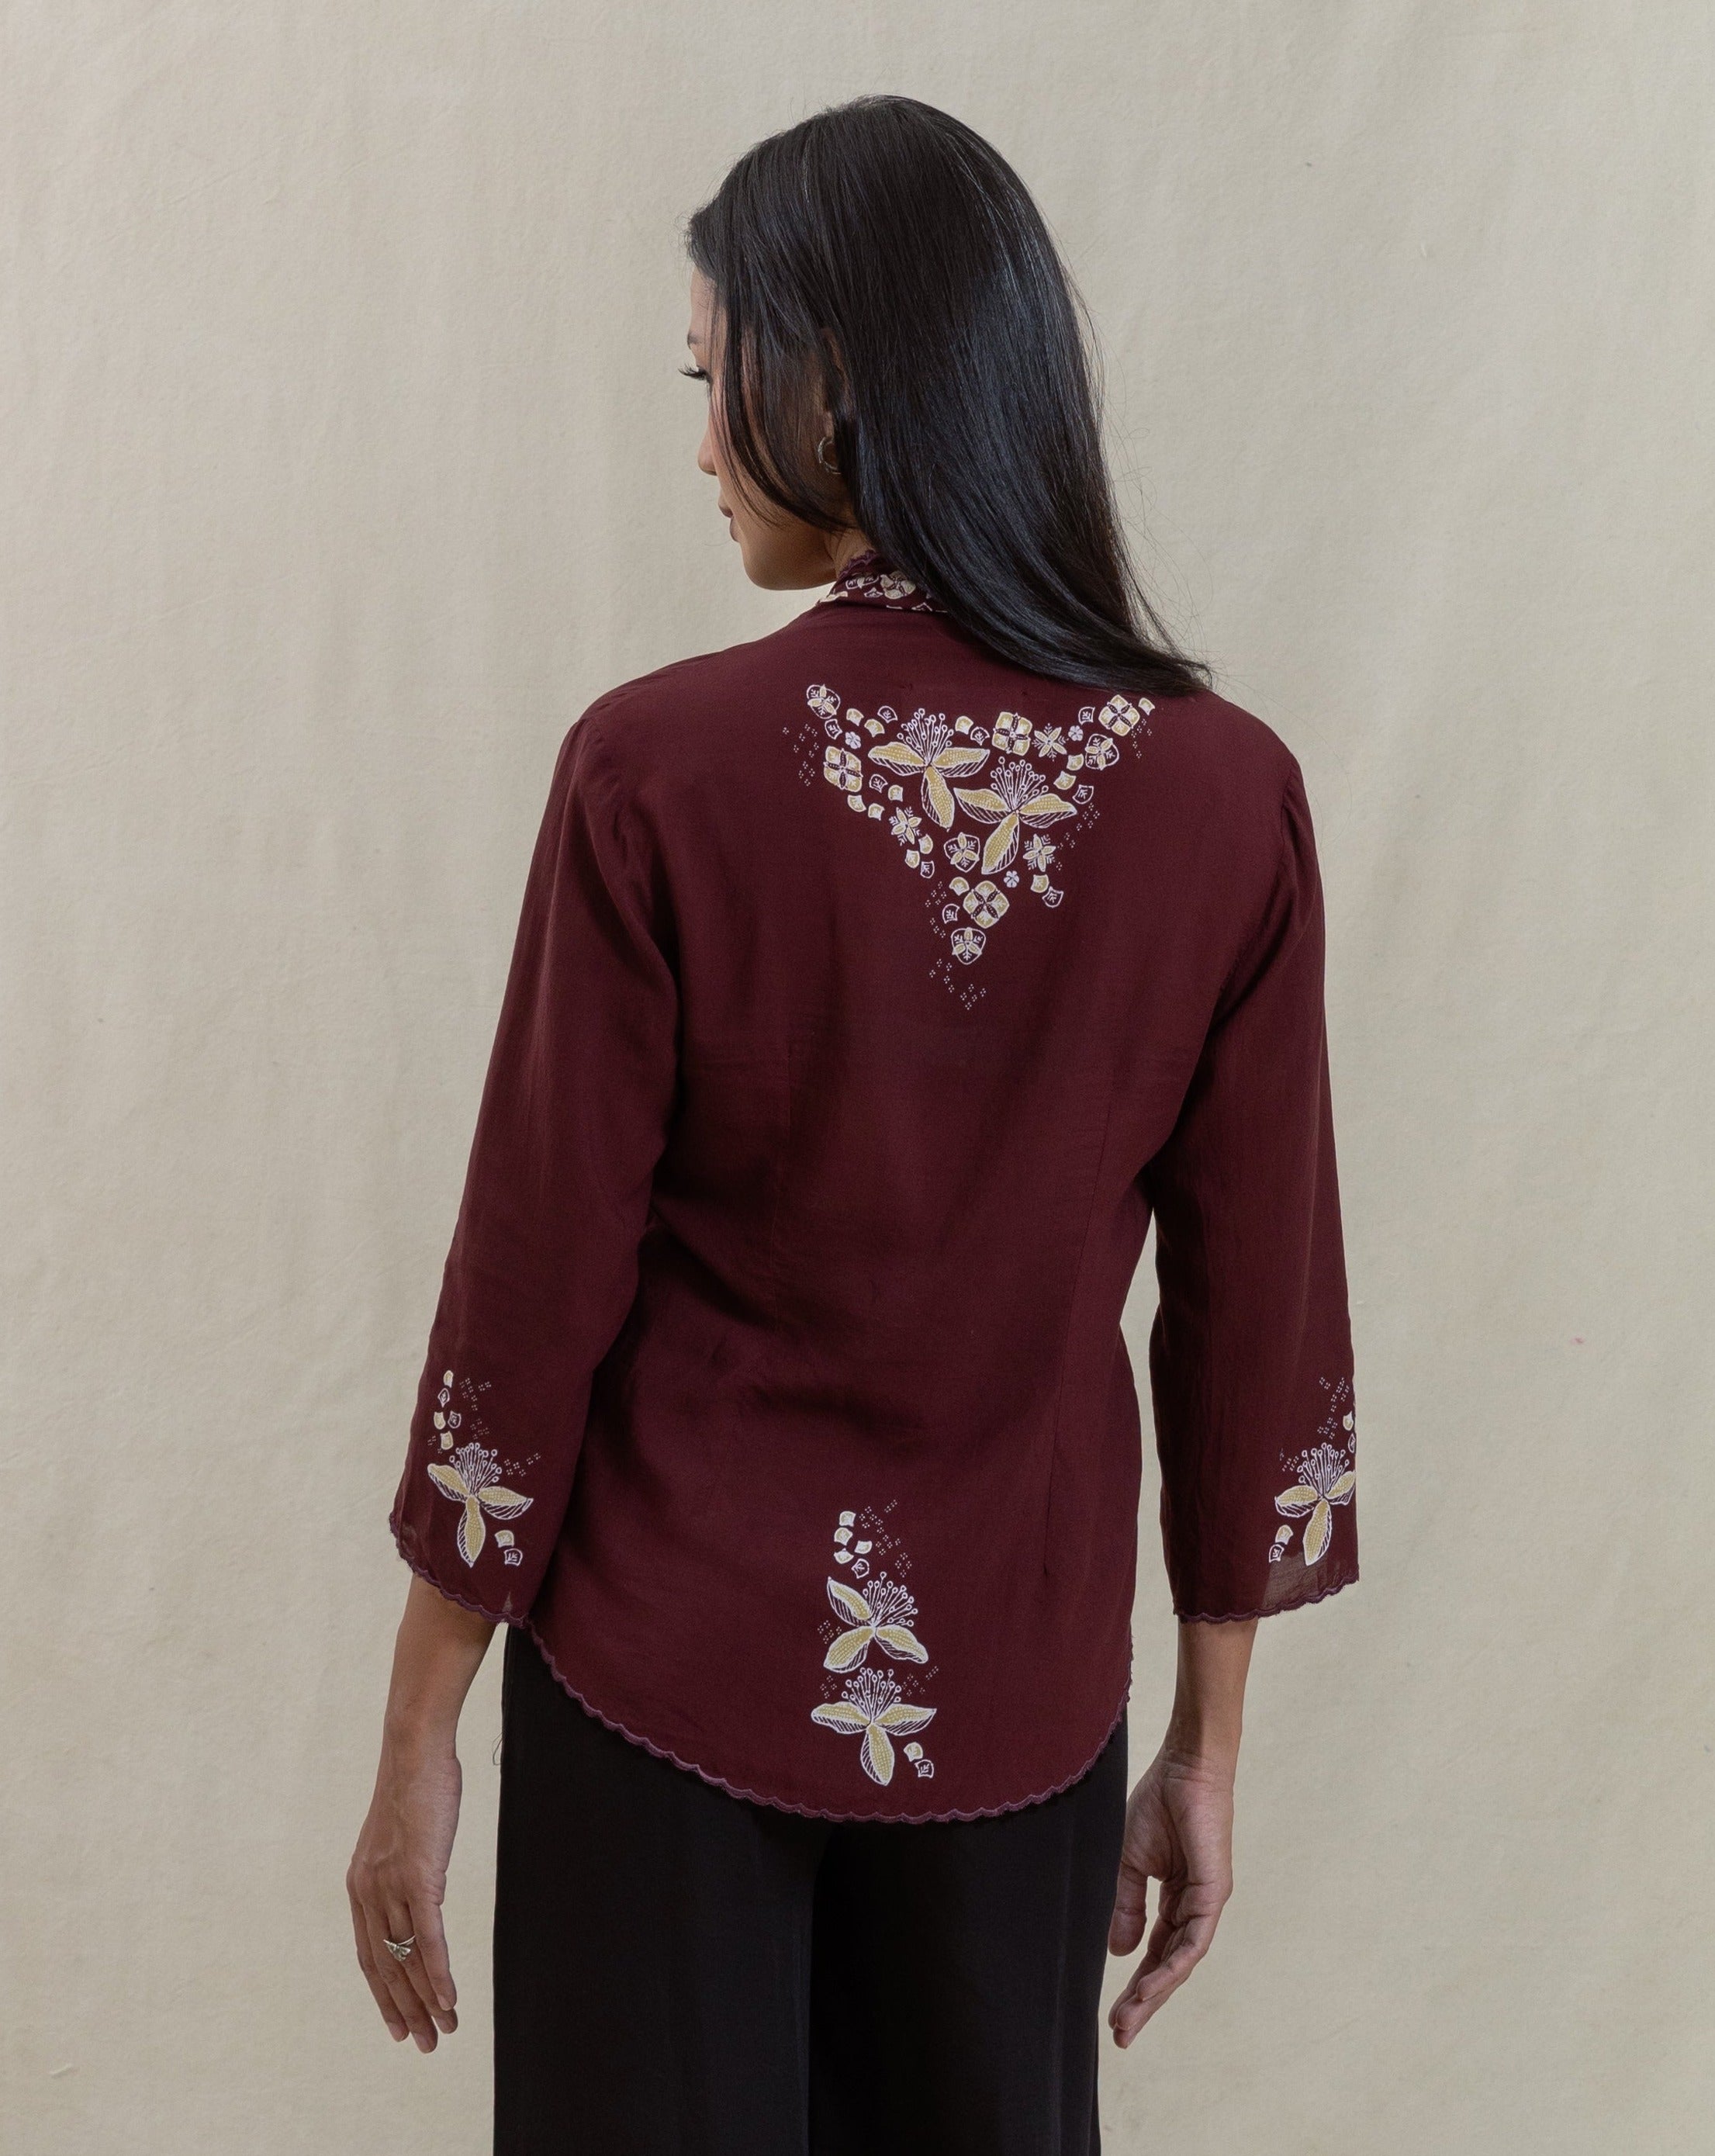 kebaya, kebaya modern, batik, batik indonesia, batik tulis, natural dye, plant based, womenswear, women's fashion, traditional clothing